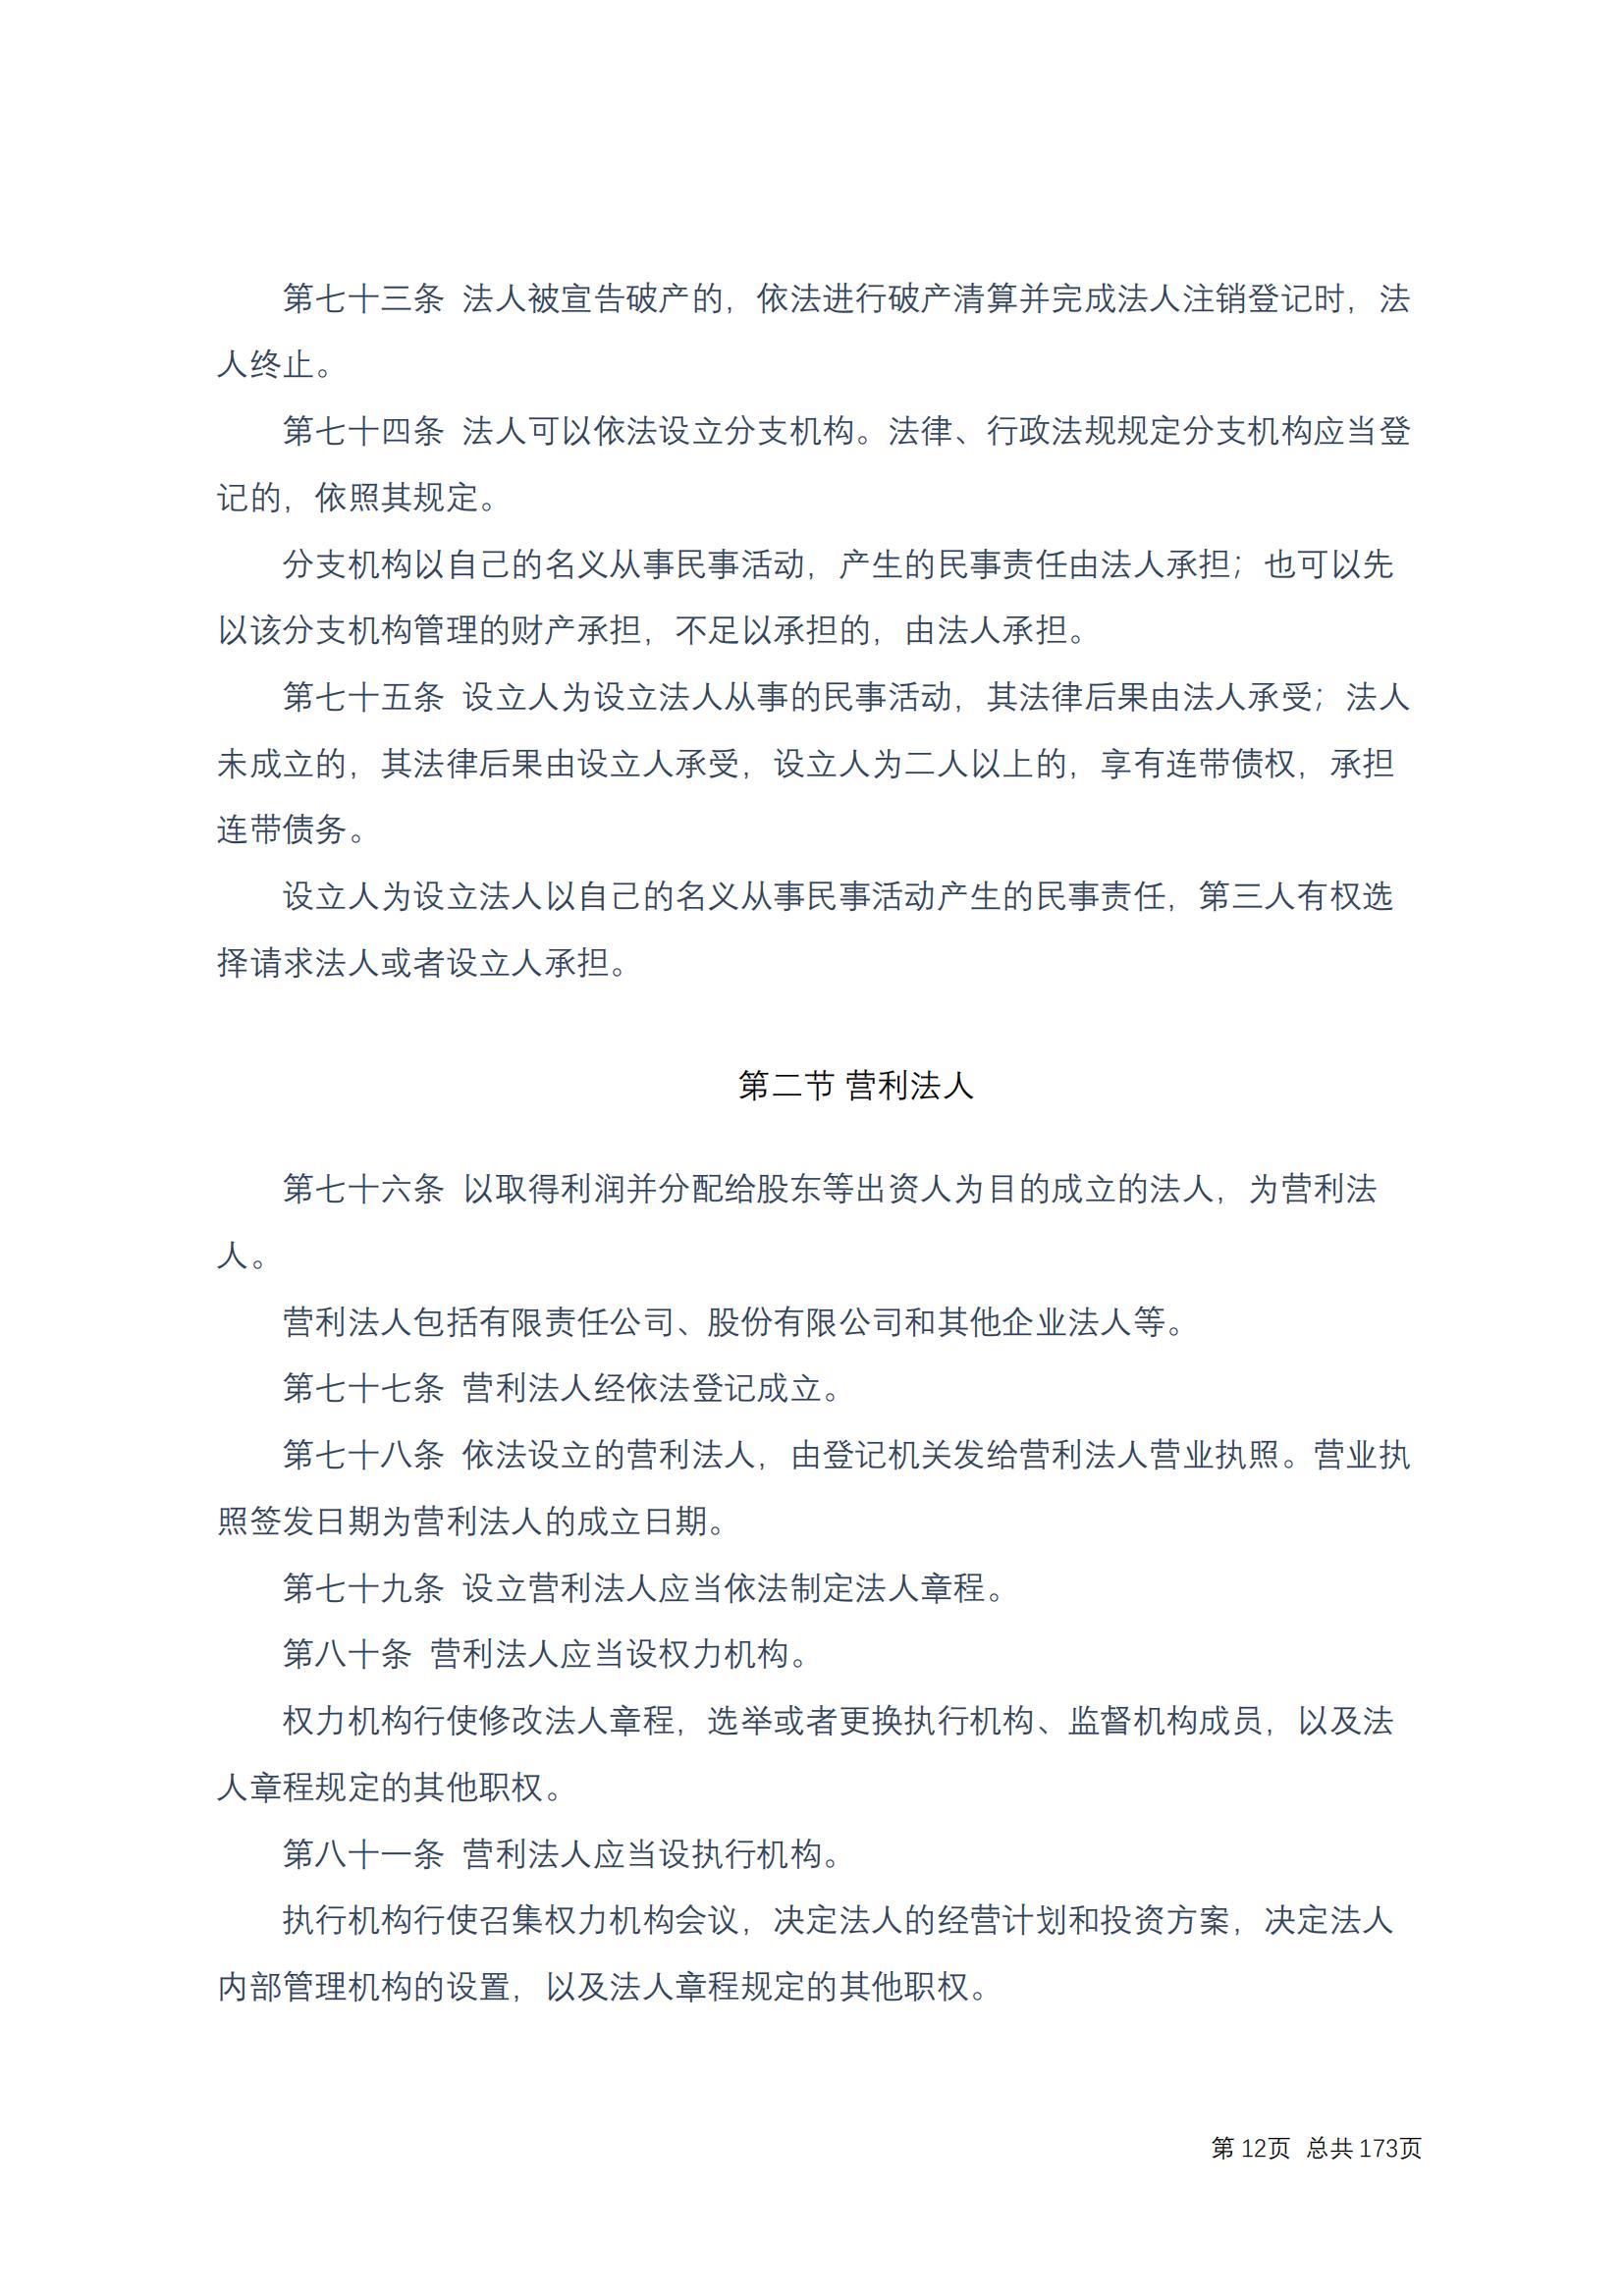 中华人民共和国民法典 修改过_11